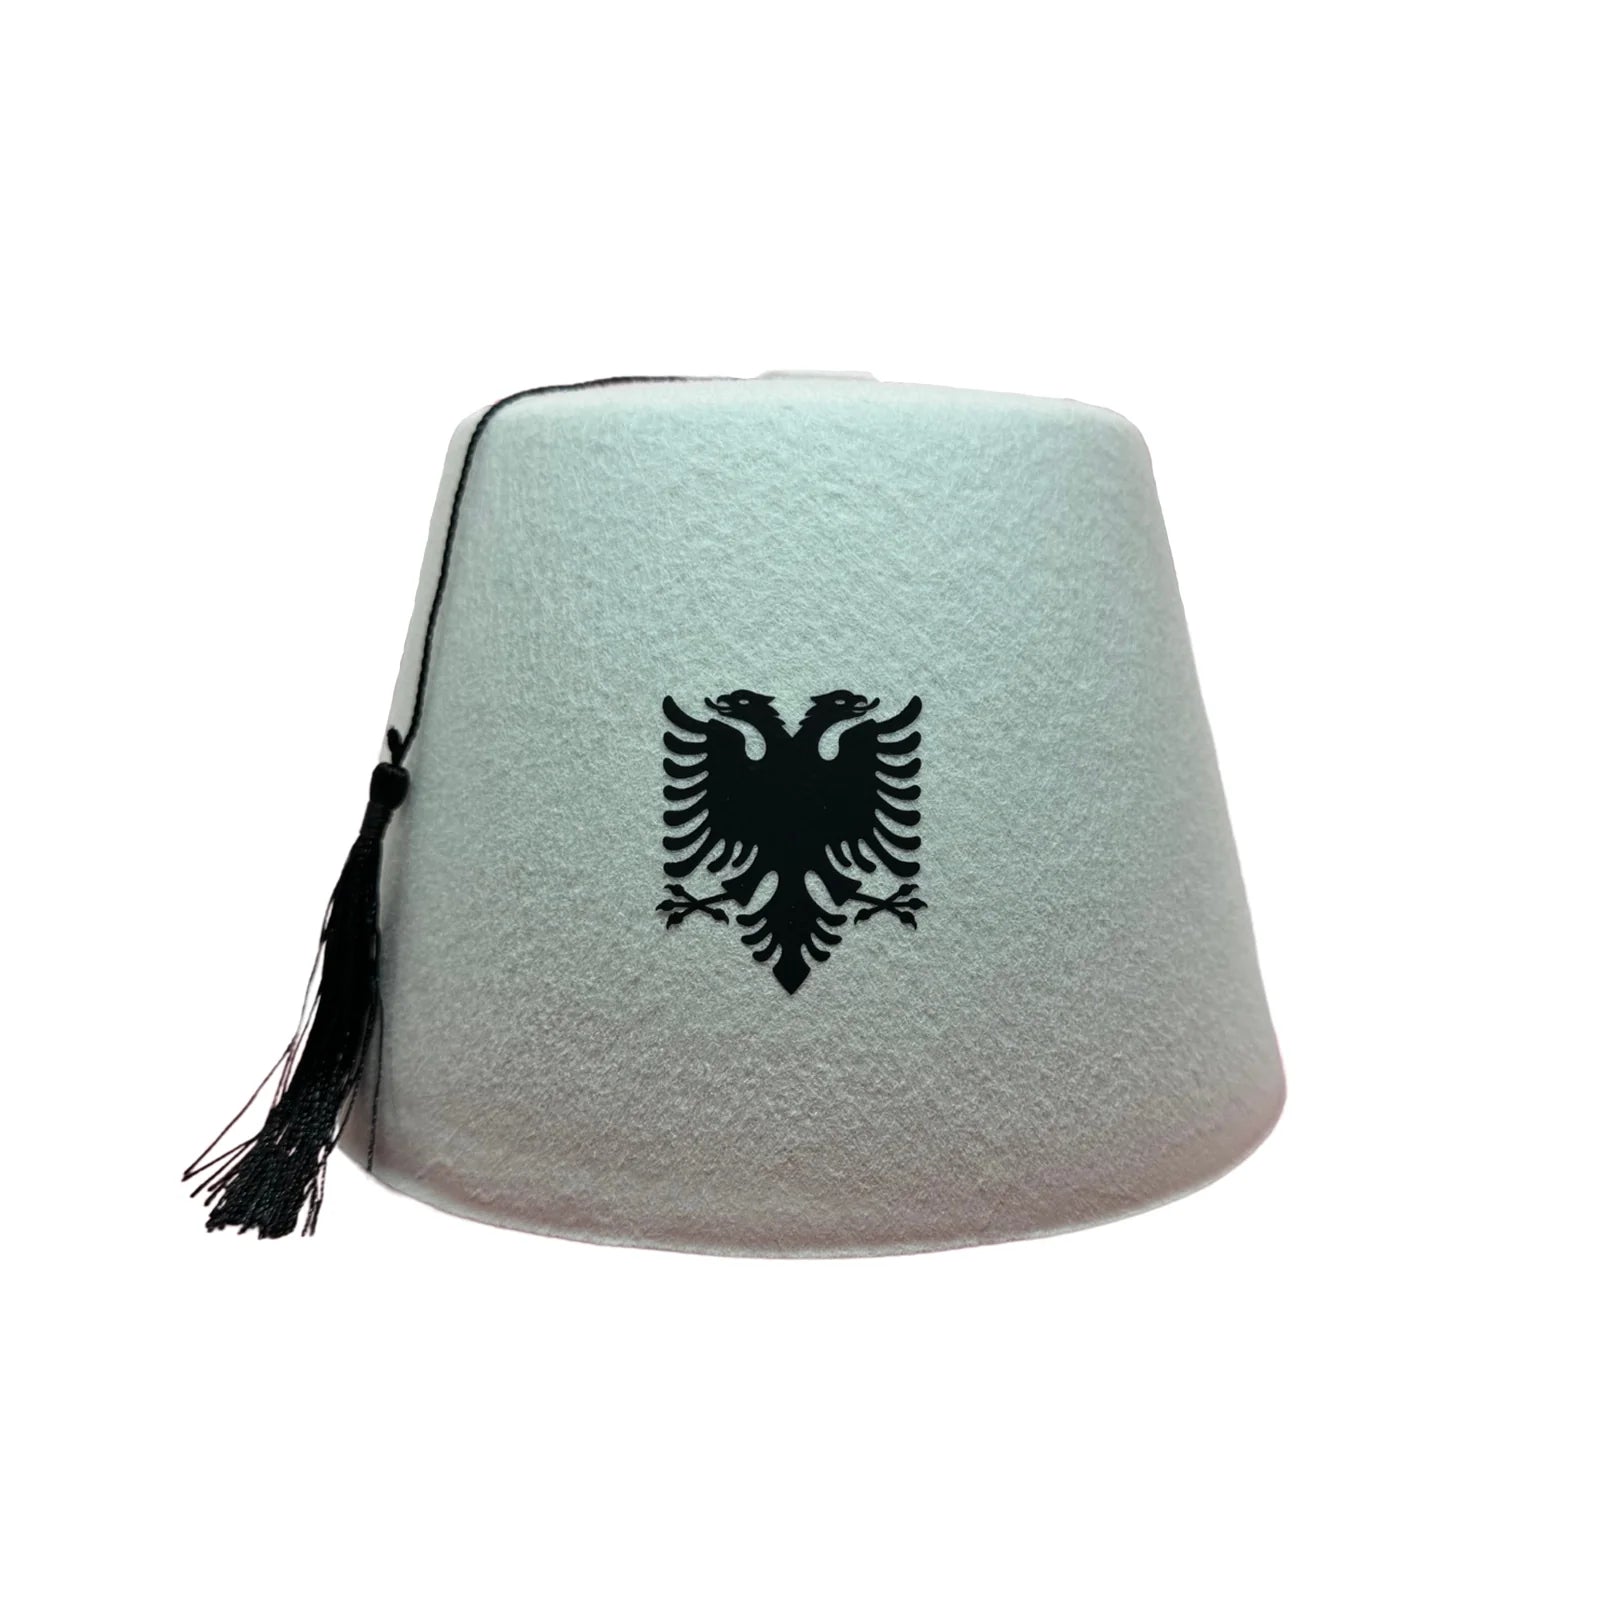 Albanischer Hut mit doppelköpfigem Adler